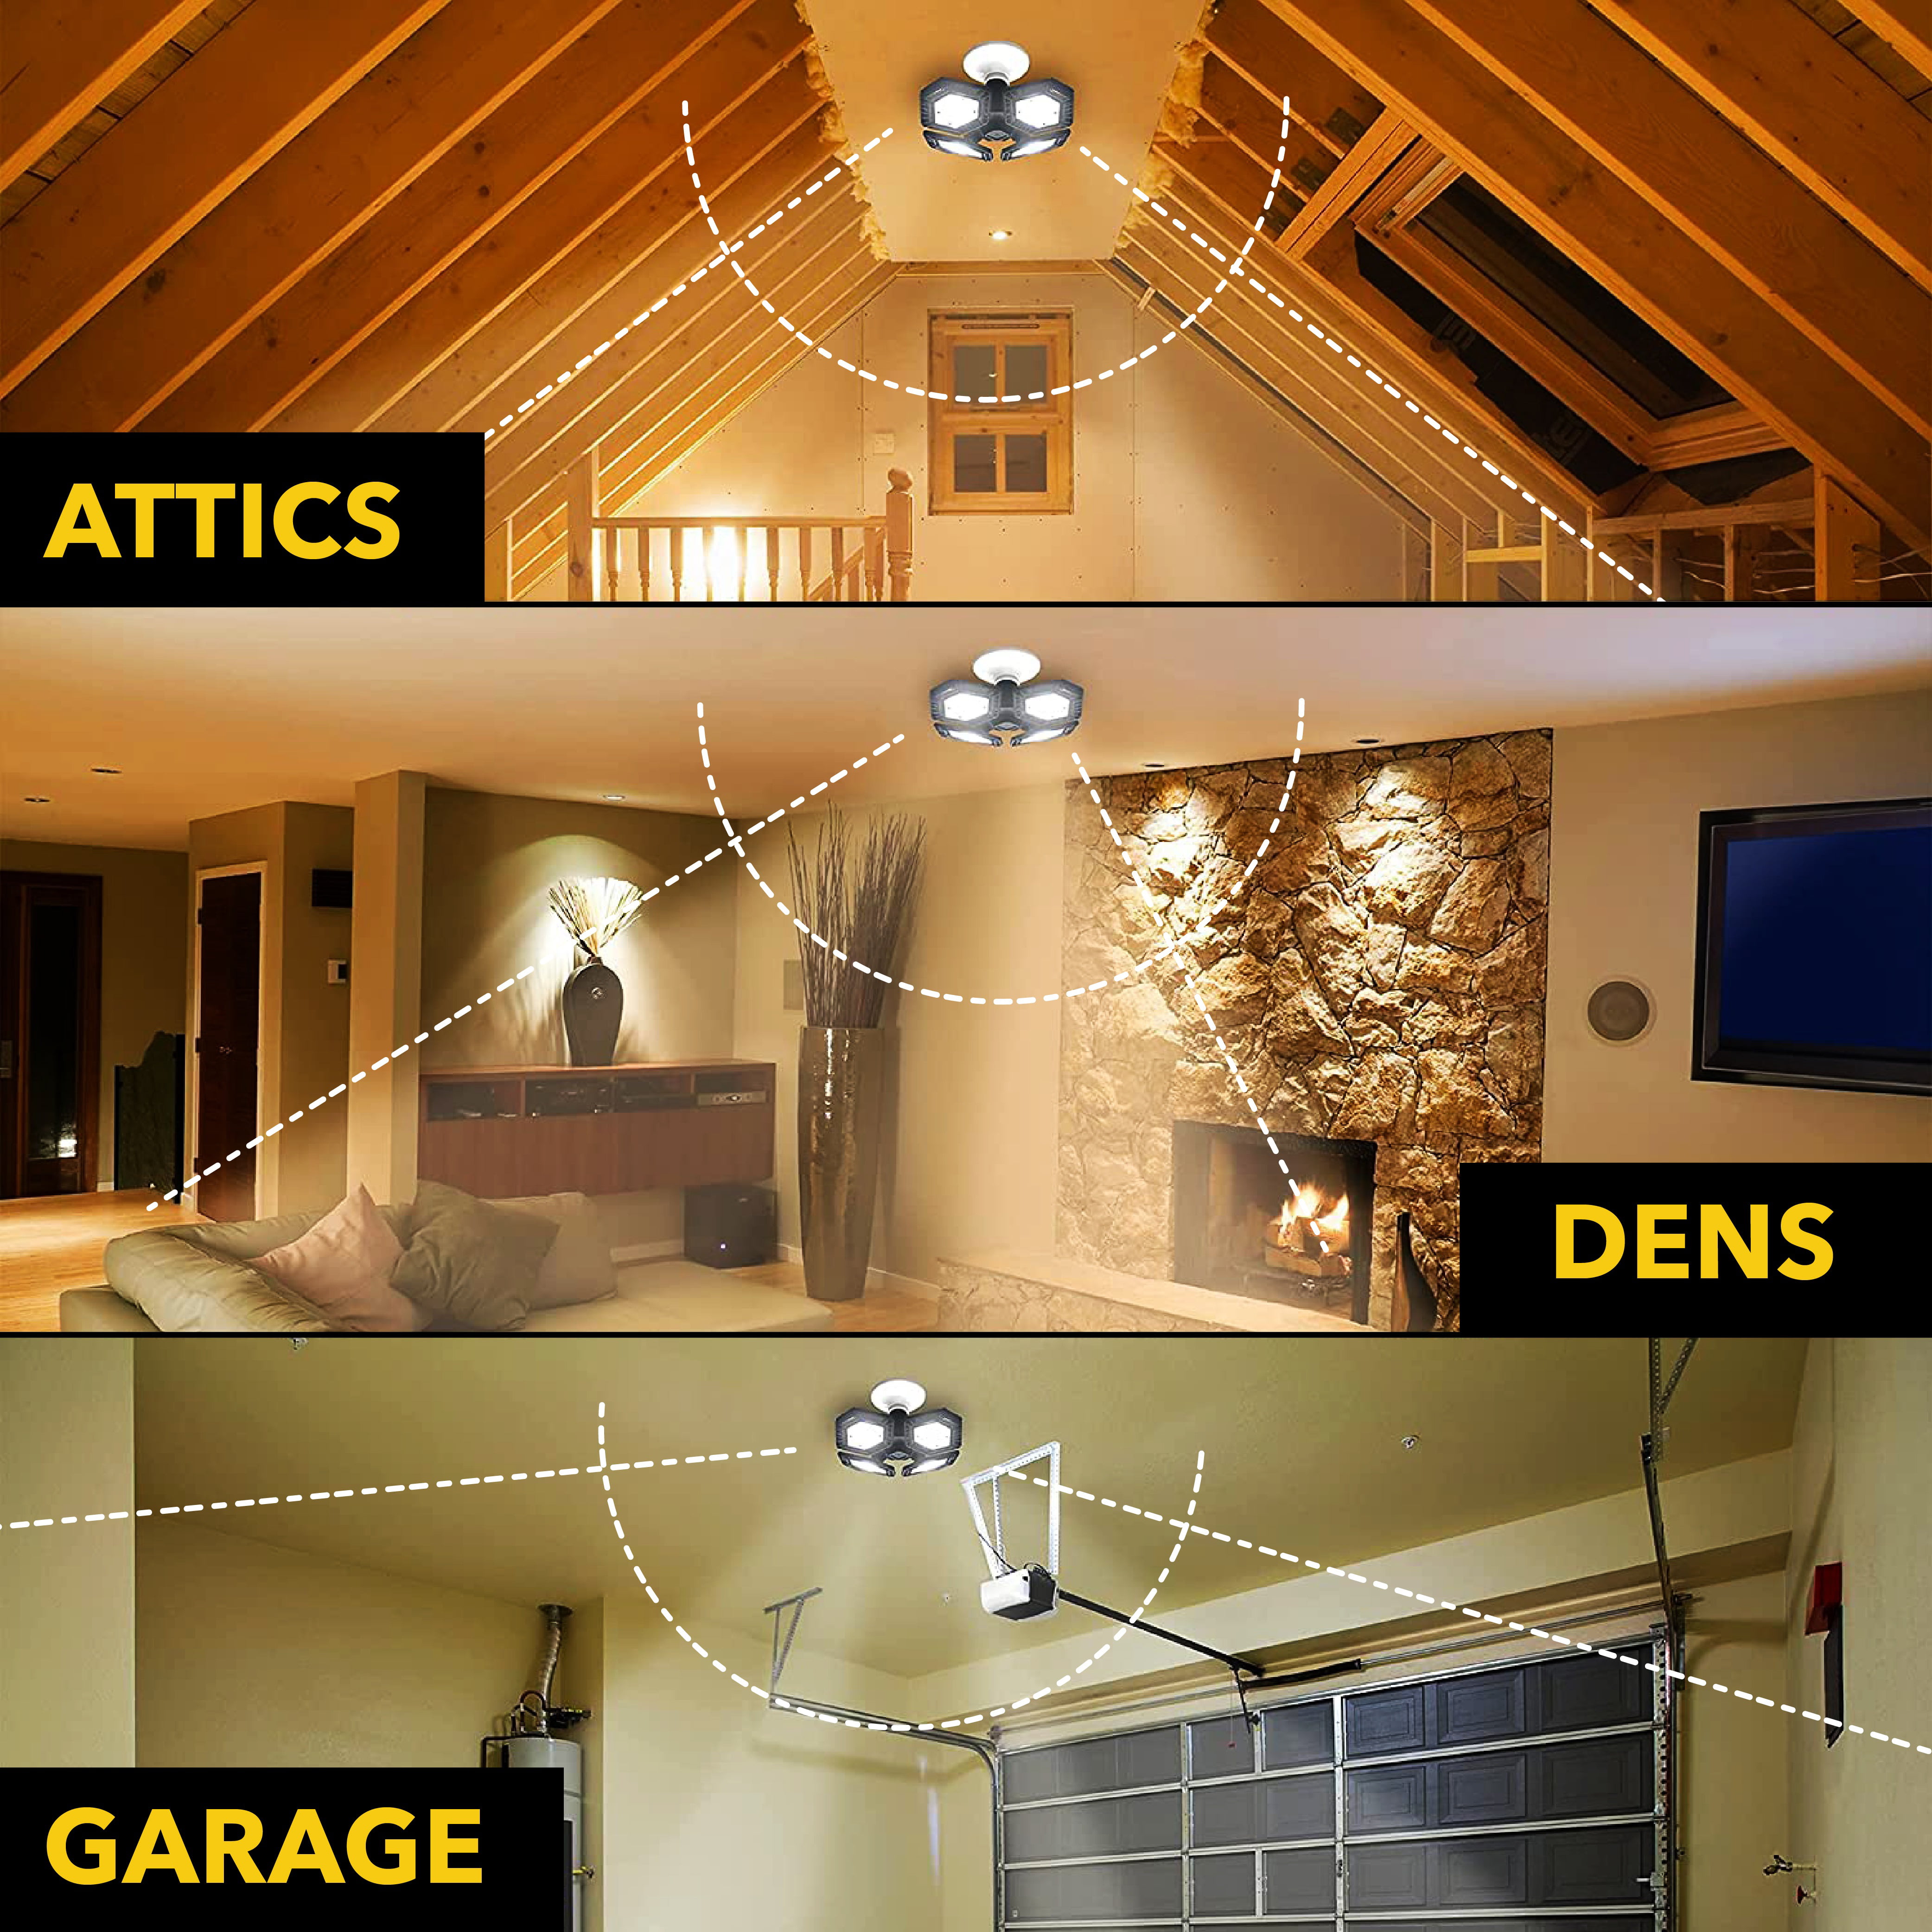 Bell Howell Quad Burst 8000 Lumens, LED Ceiling Light Work Light, Garage  Light, Indoor Outdoor Lighting As Seen On TV